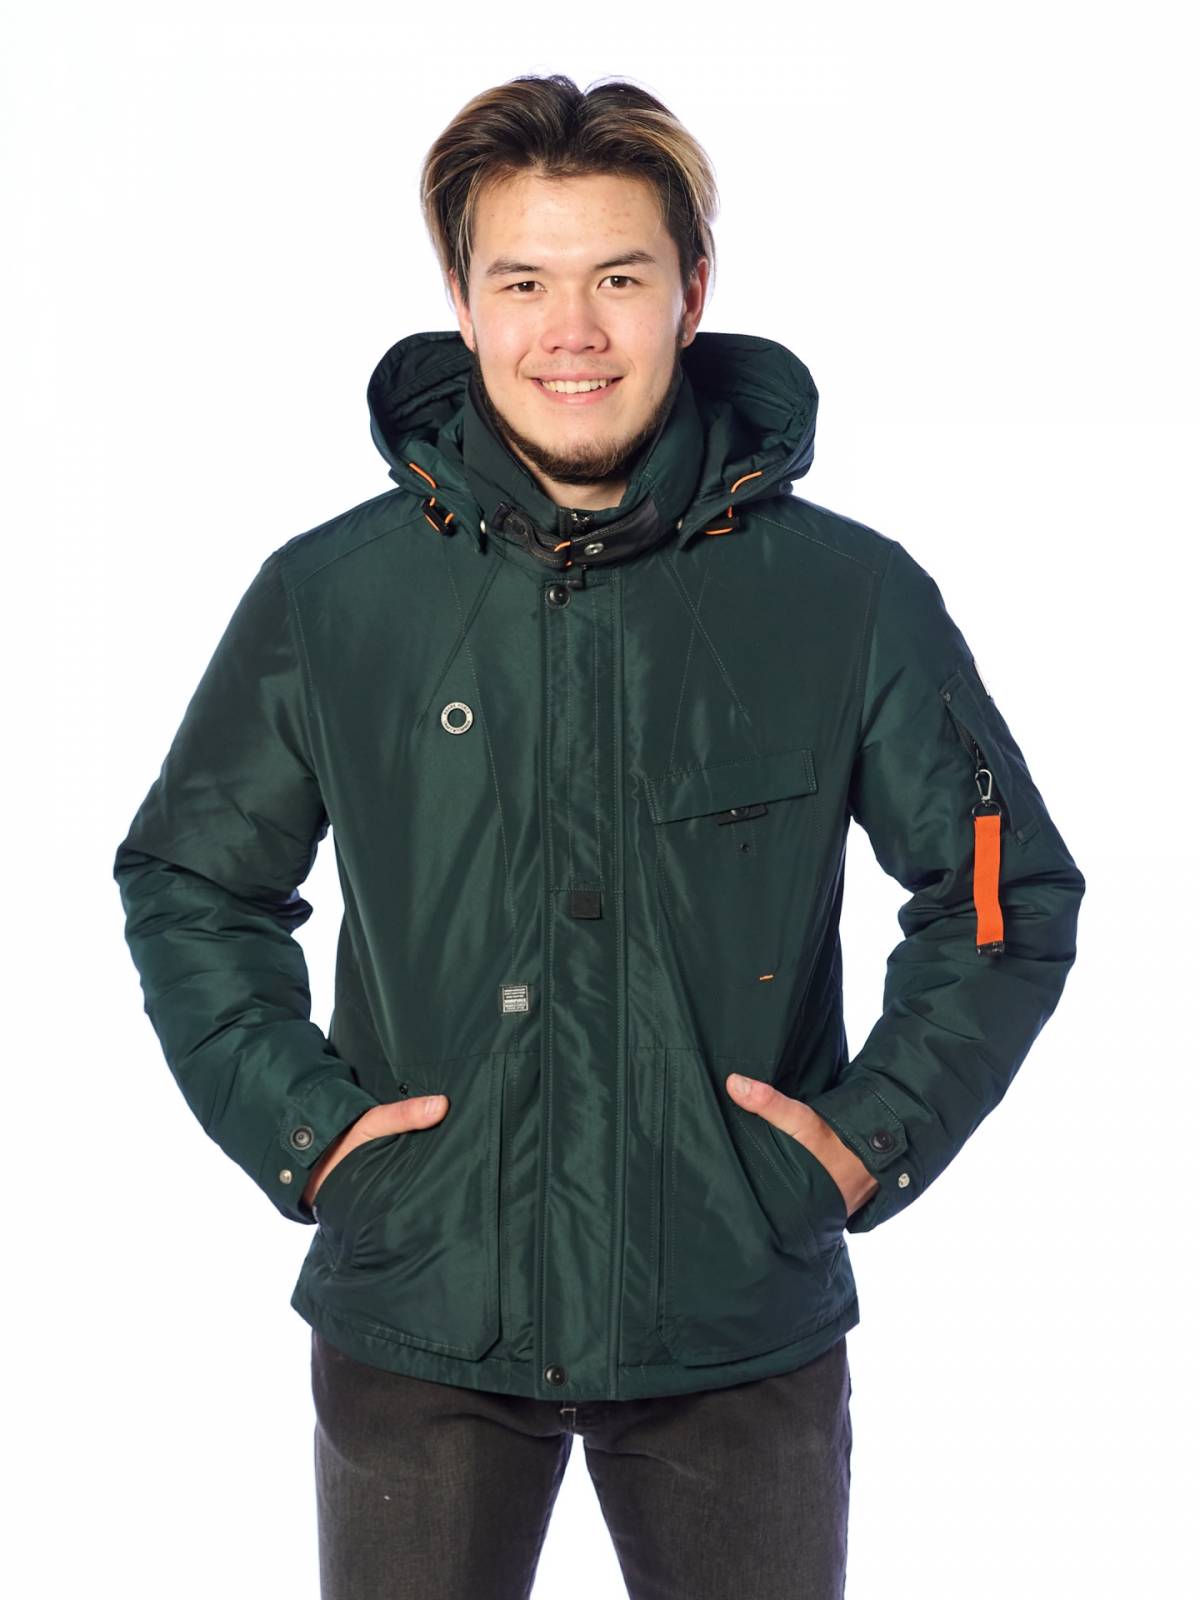 Зимняя куртка мужская Shark Force 4190 зеленая 46 RU